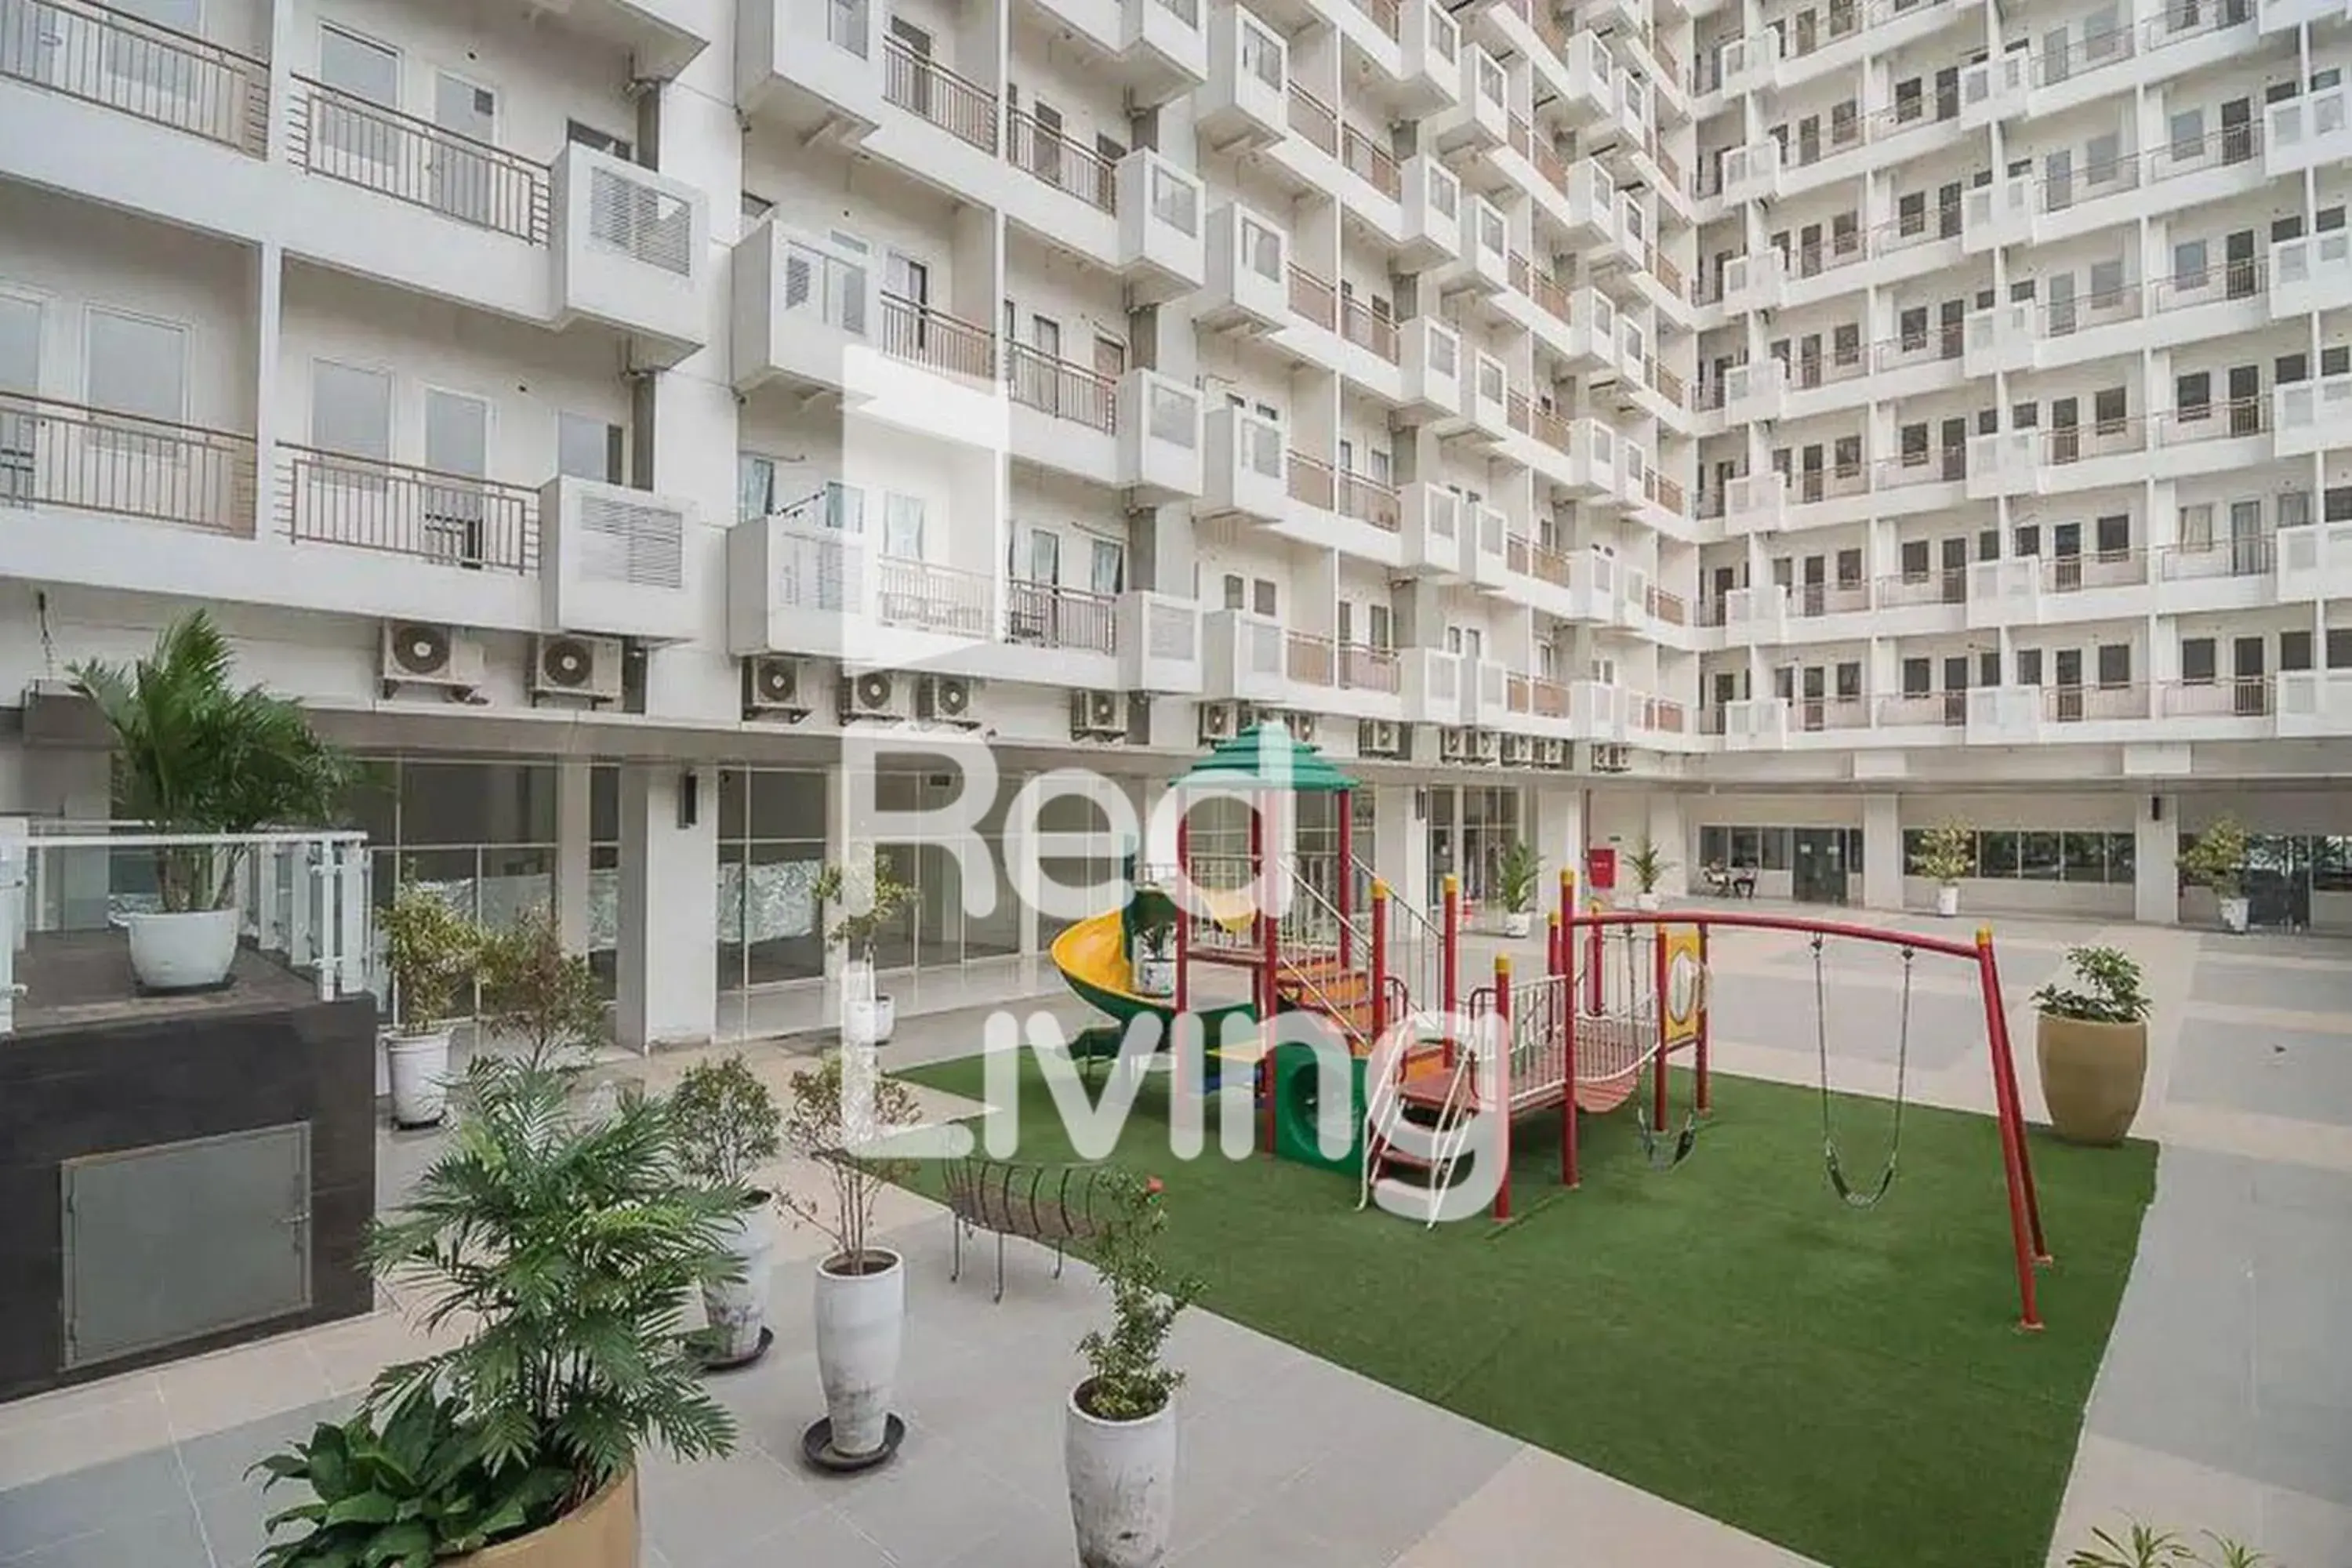 Property building, Children's Play Area in RedLiving Apartemen Sentul Tower - Skyland